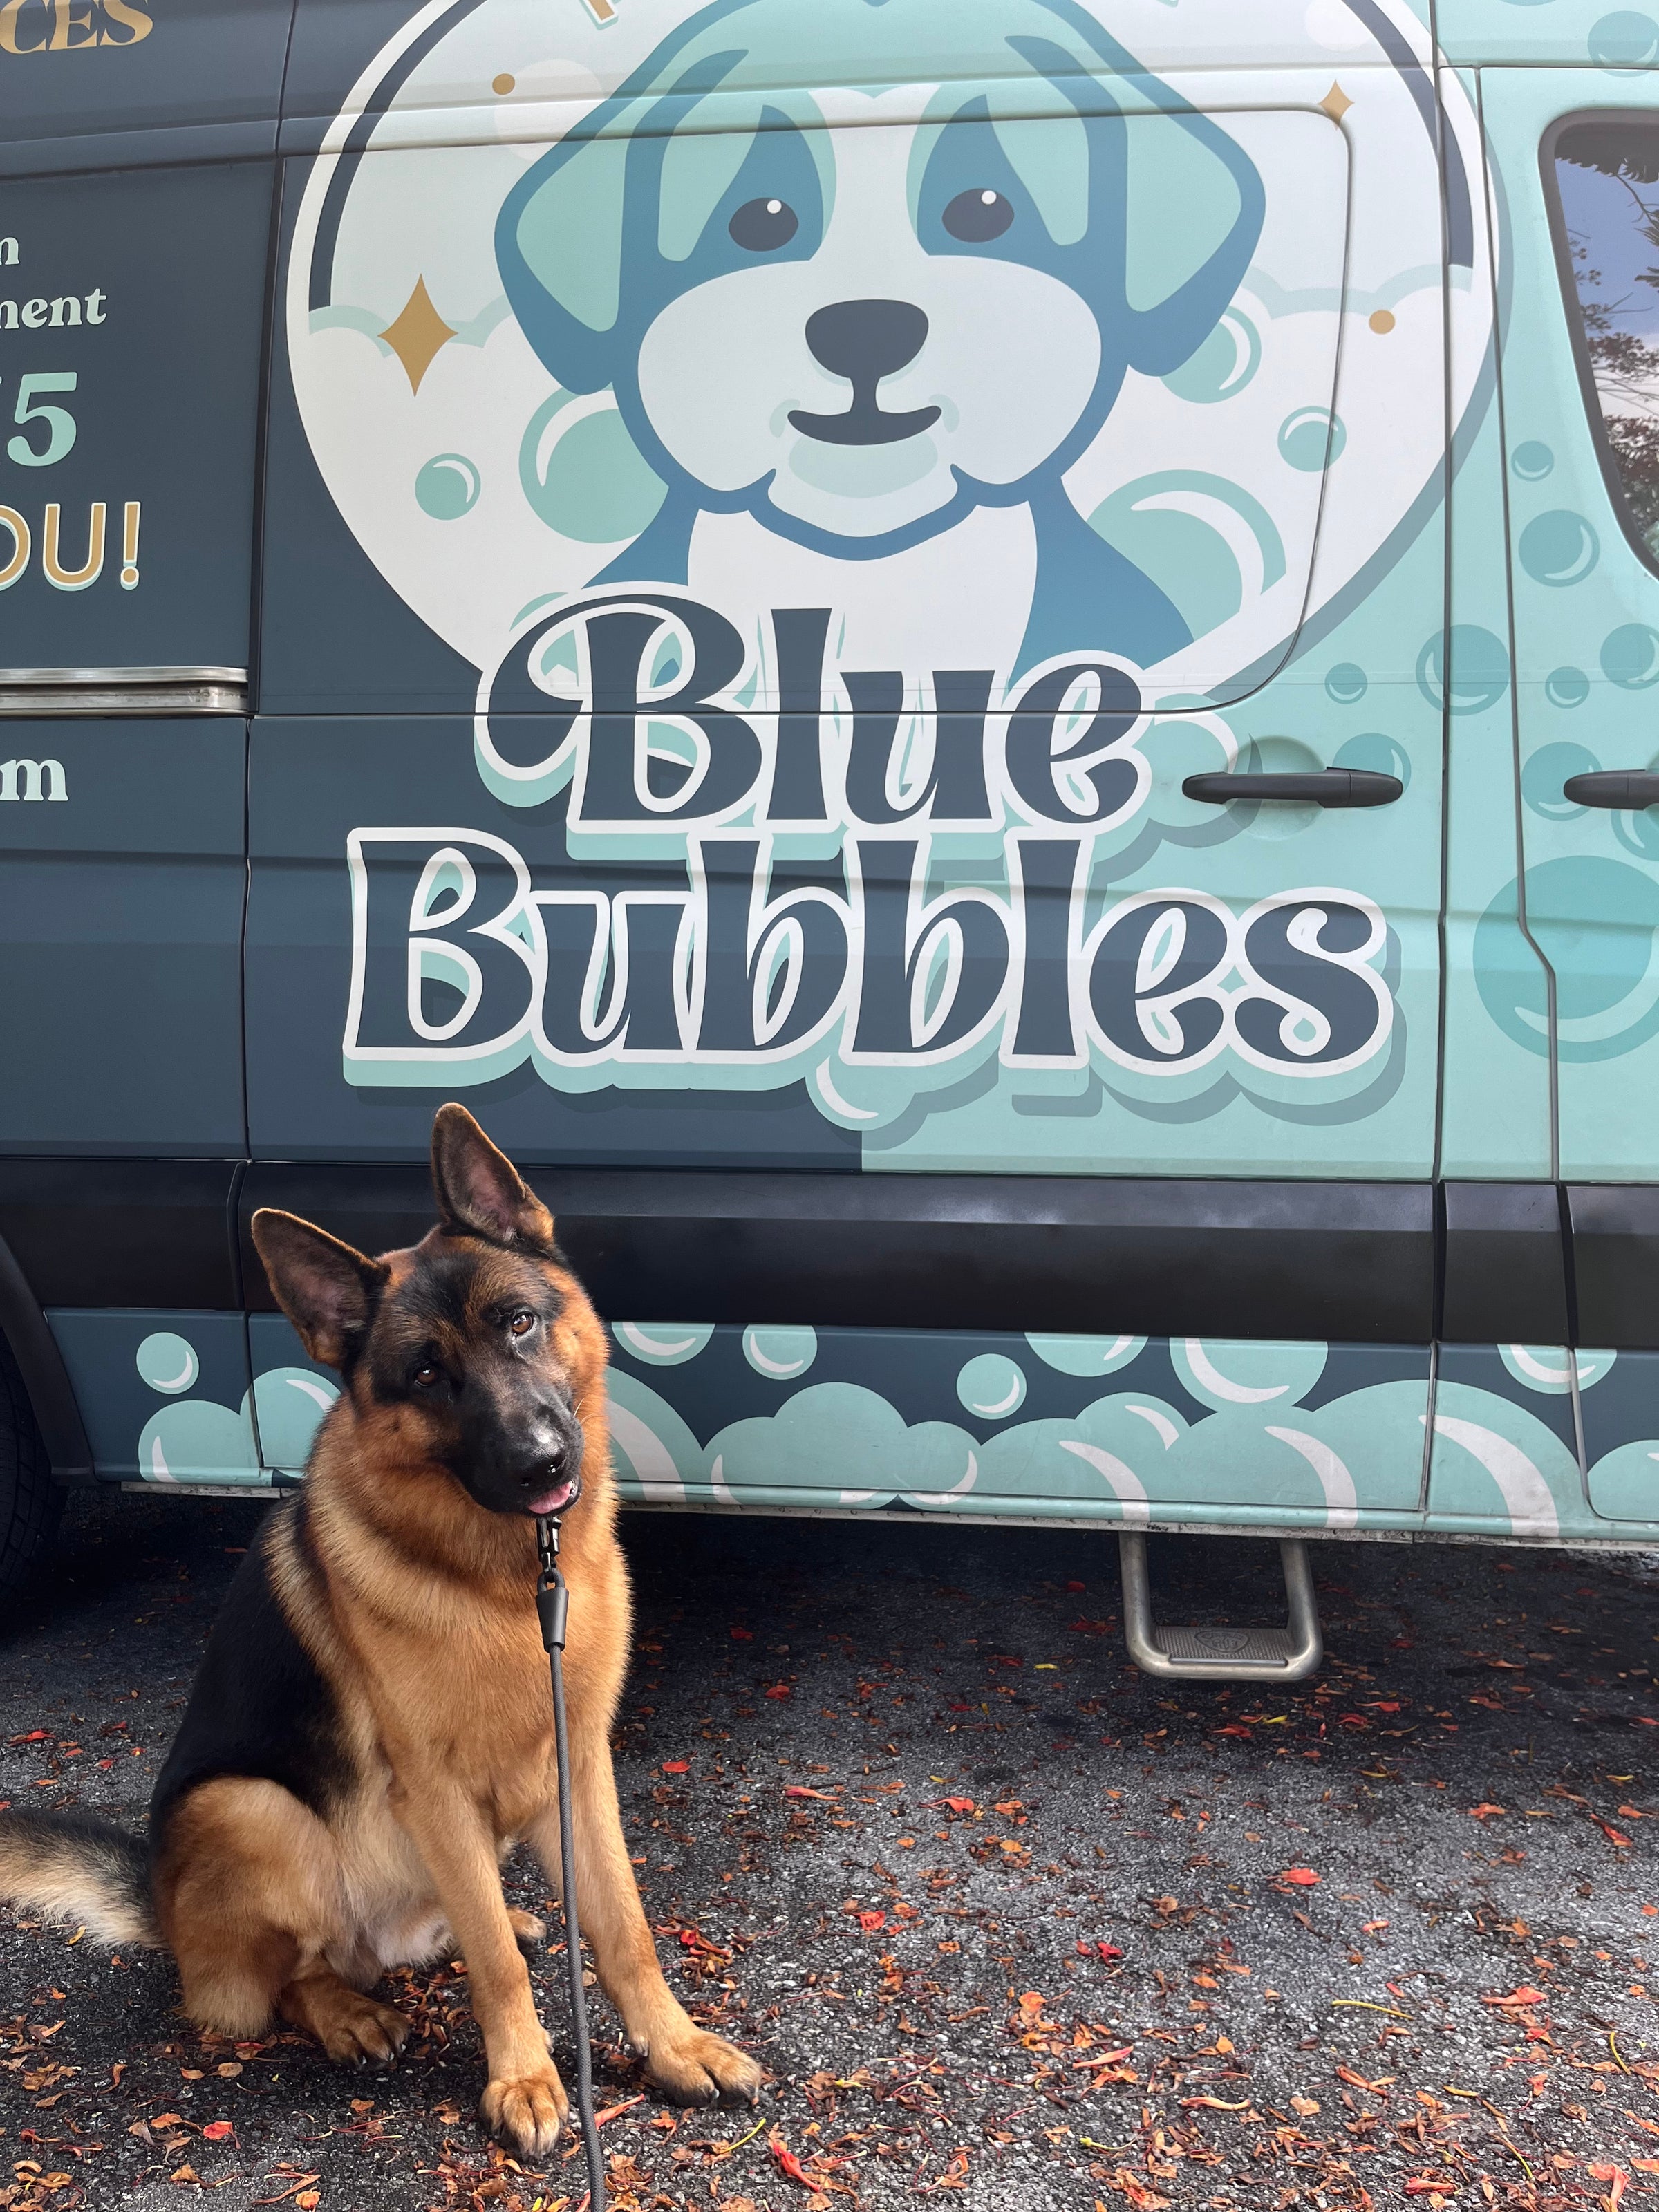 Bubbles Pet Spa